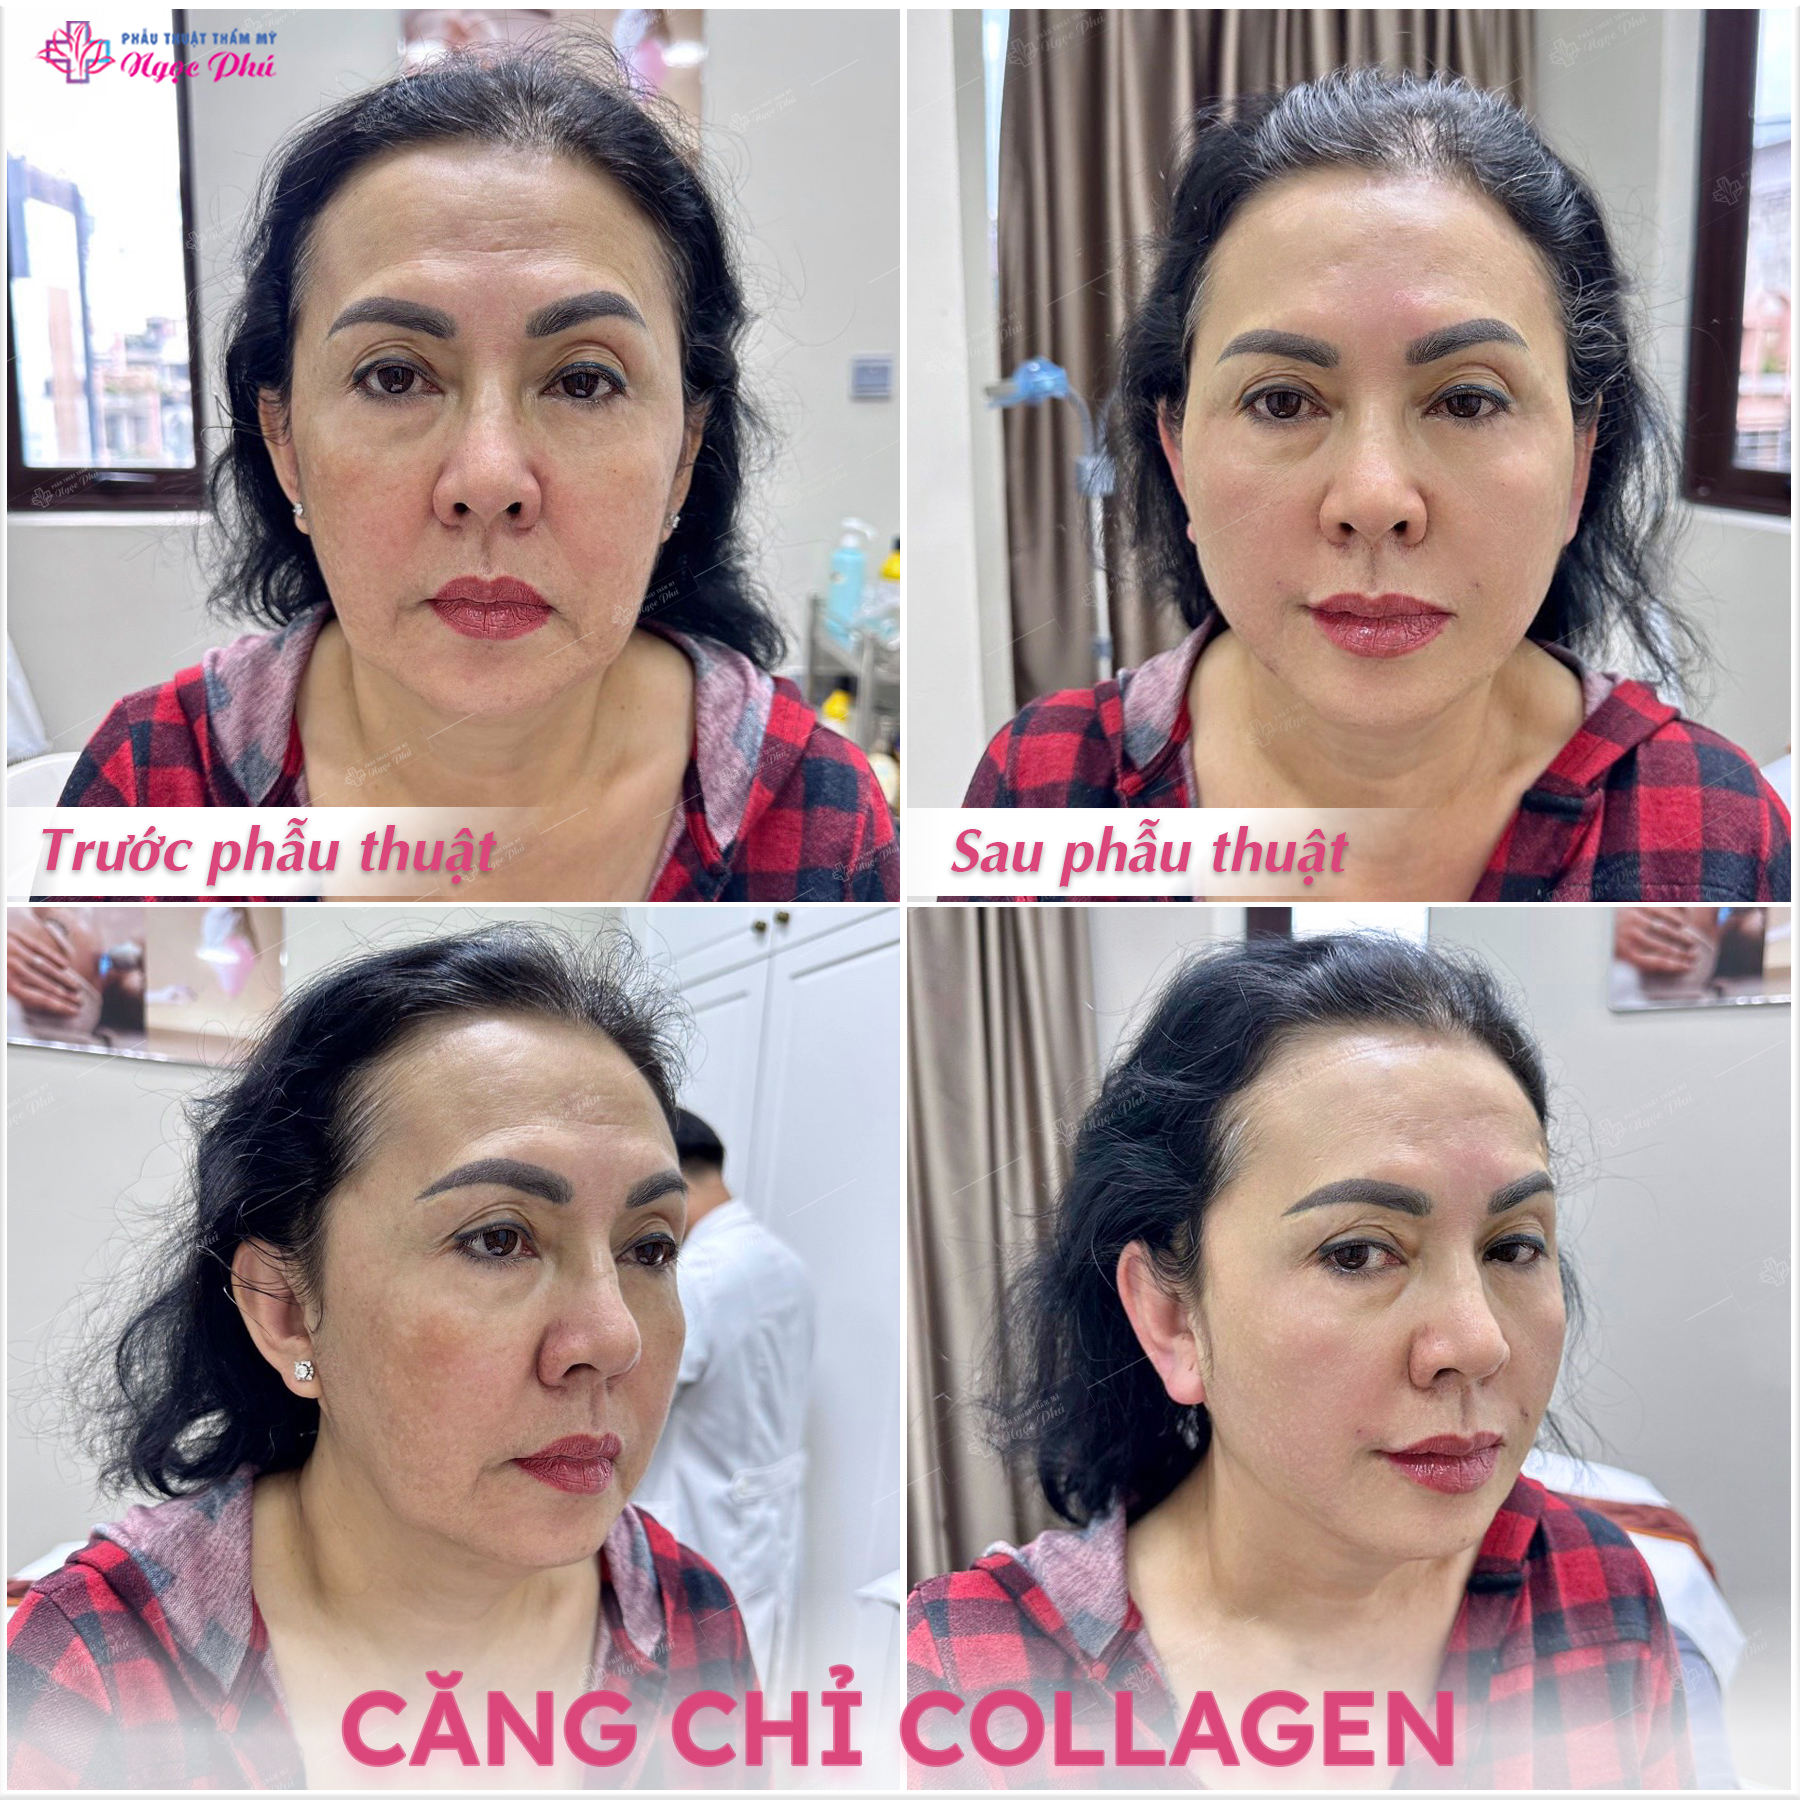 Căng da mặt bằng chỉ collagen là một phương pháp thẩm mỹ phổ biến được sử dụng để cải thiện độ đàn hồi và săn chắc của da, giảm nếp nhăn và làm tươi trẻ làn da.